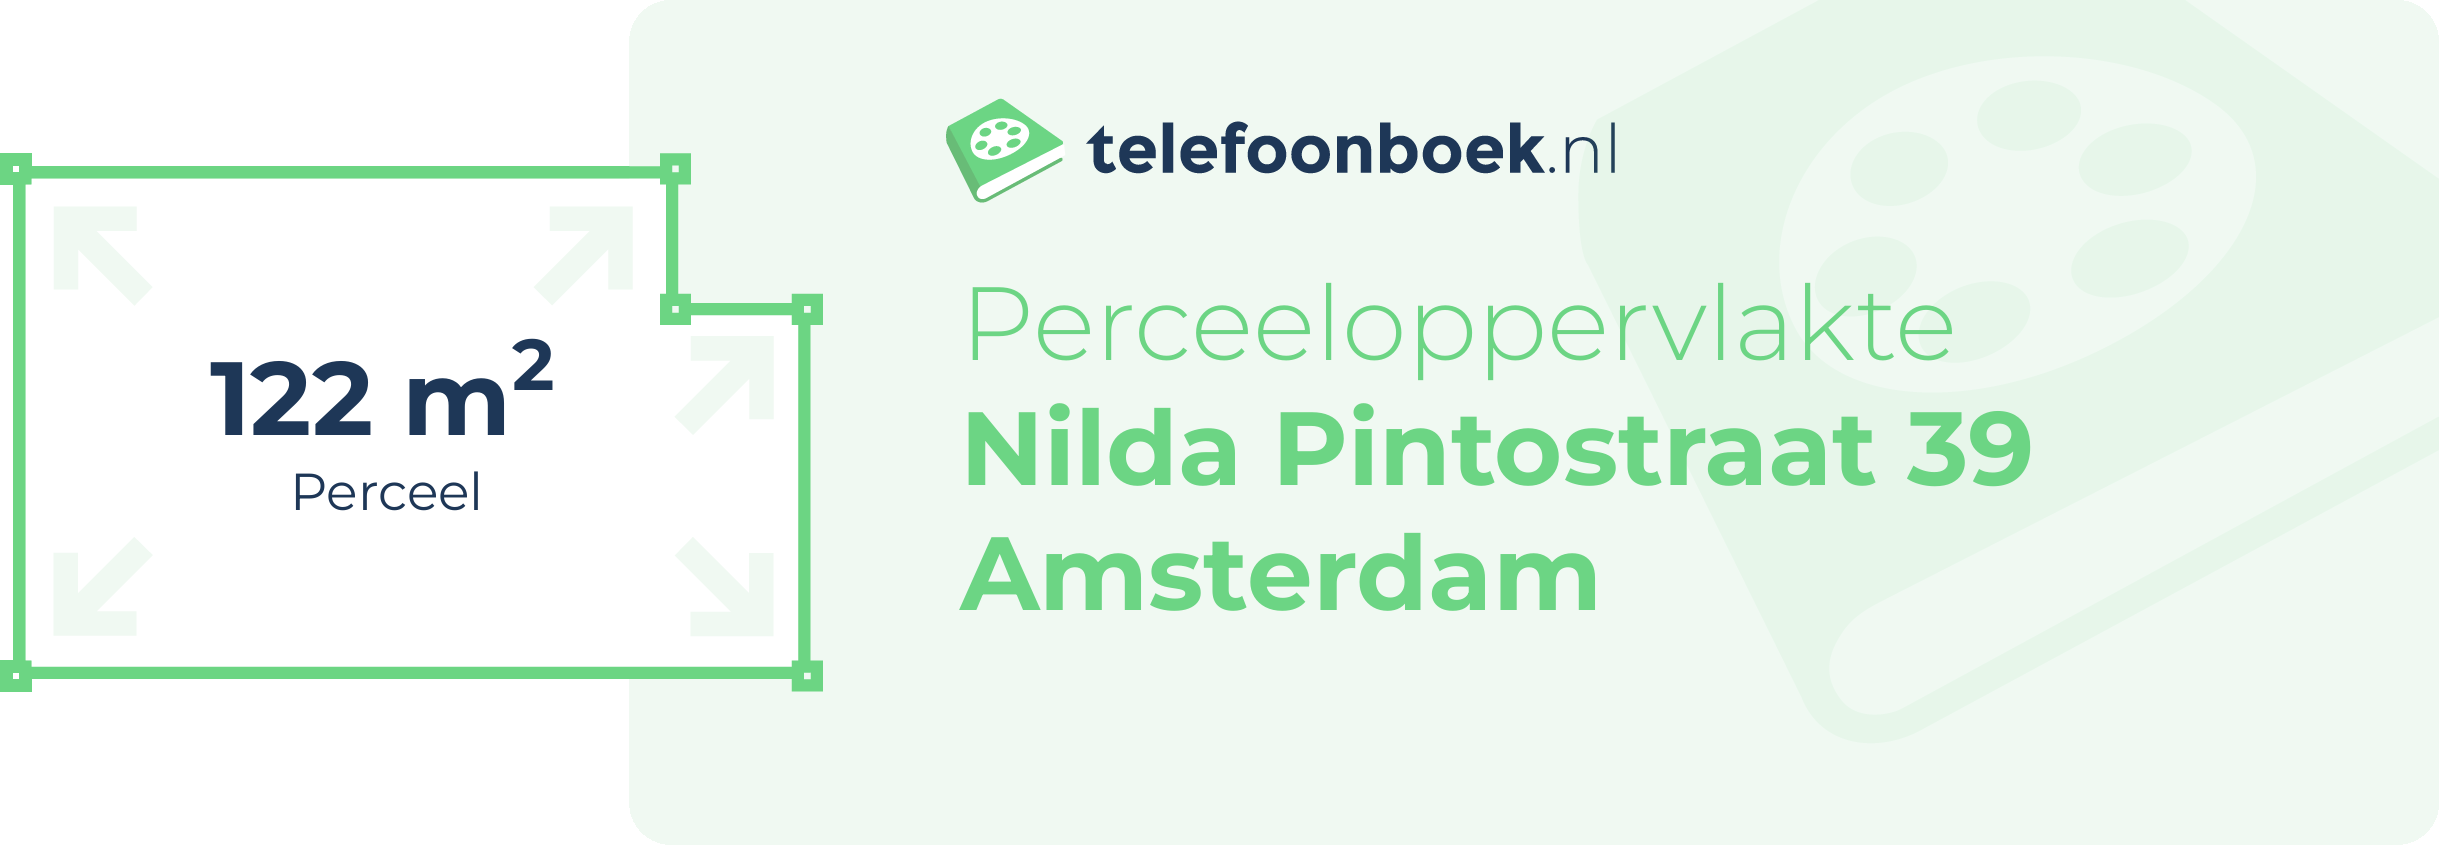 Perceeloppervlakte Nilda Pintostraat 39 Amsterdam